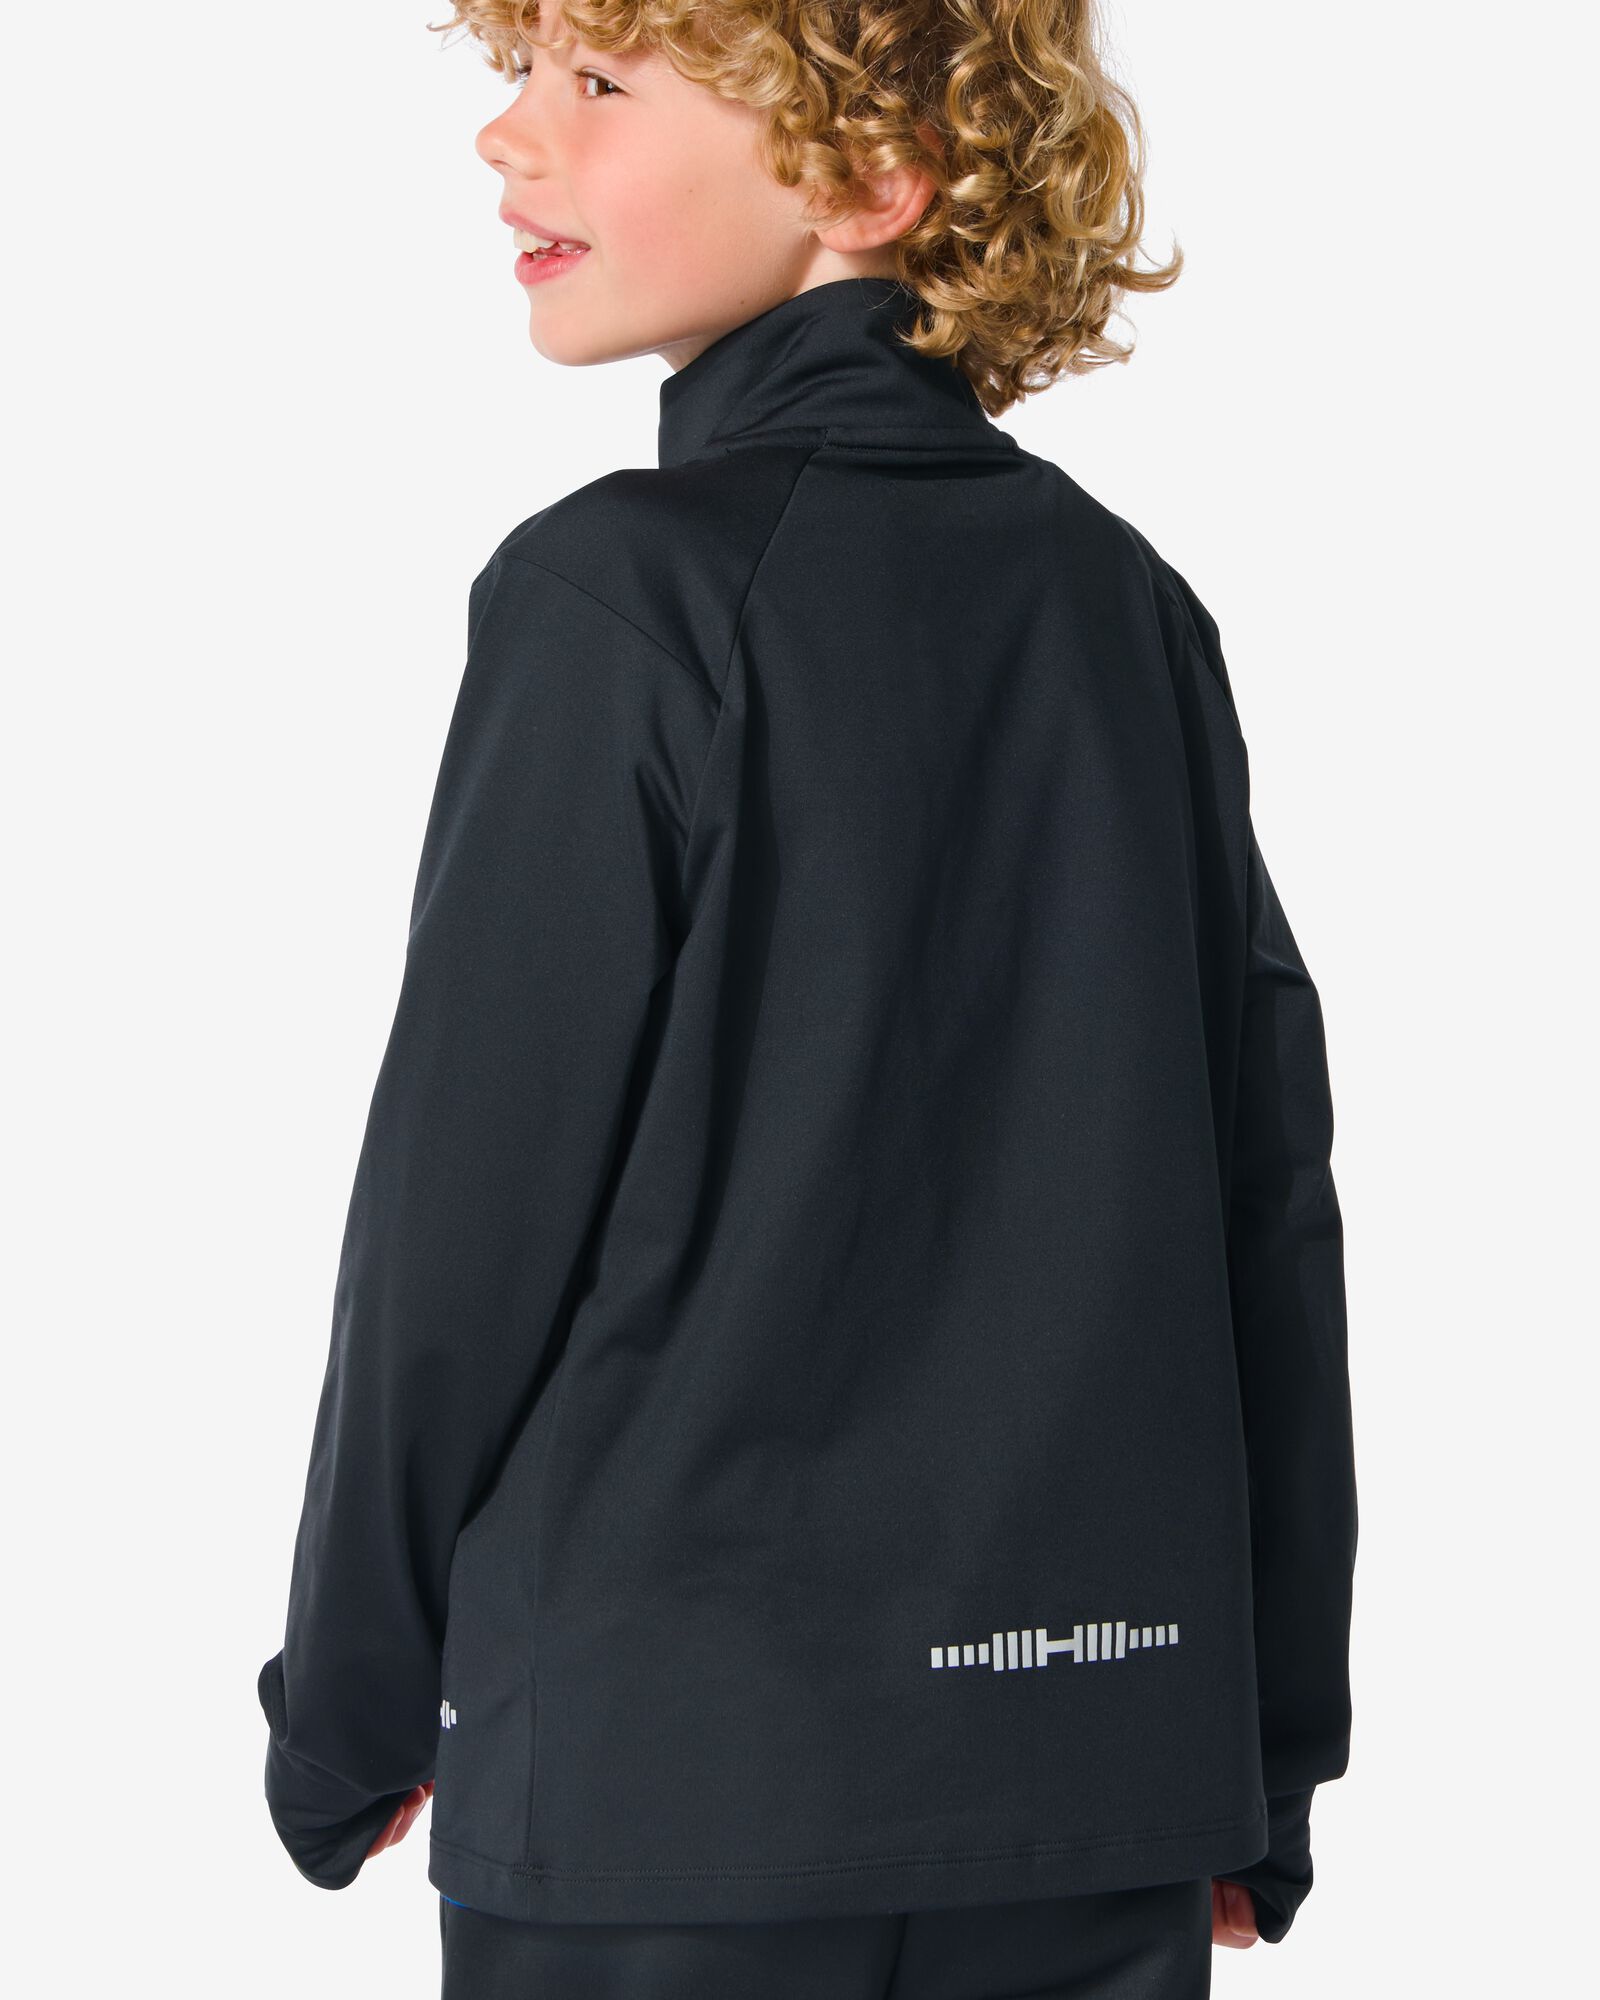 kinder fleece sportshirt zwart 110/116 - 36090316 - HEMA